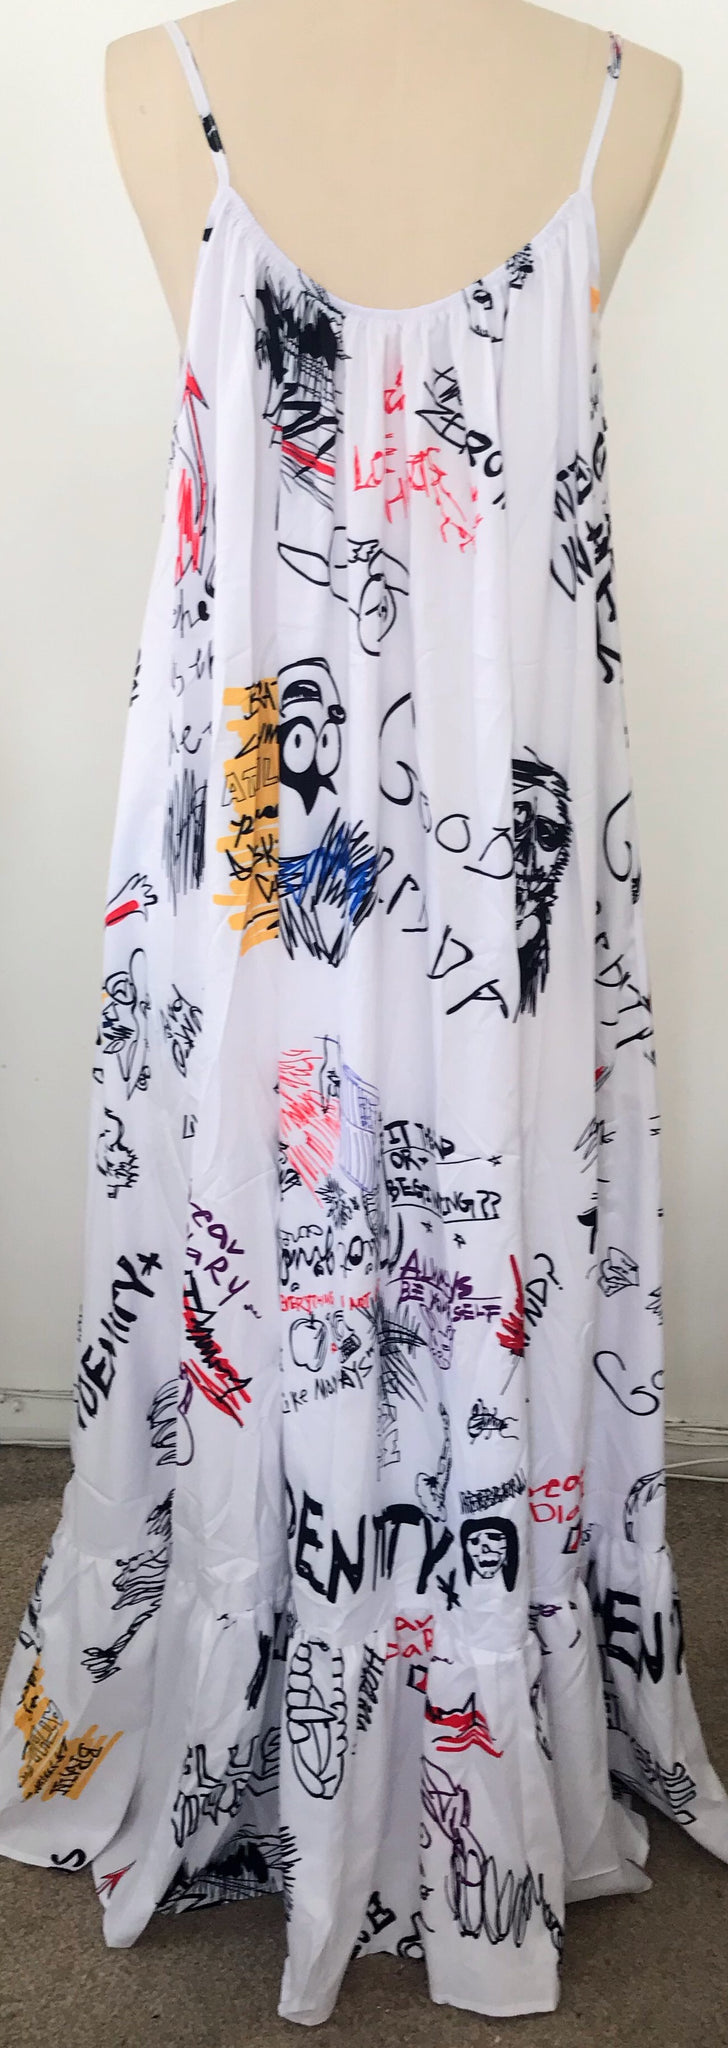 Graffiti Print Maxi Dress